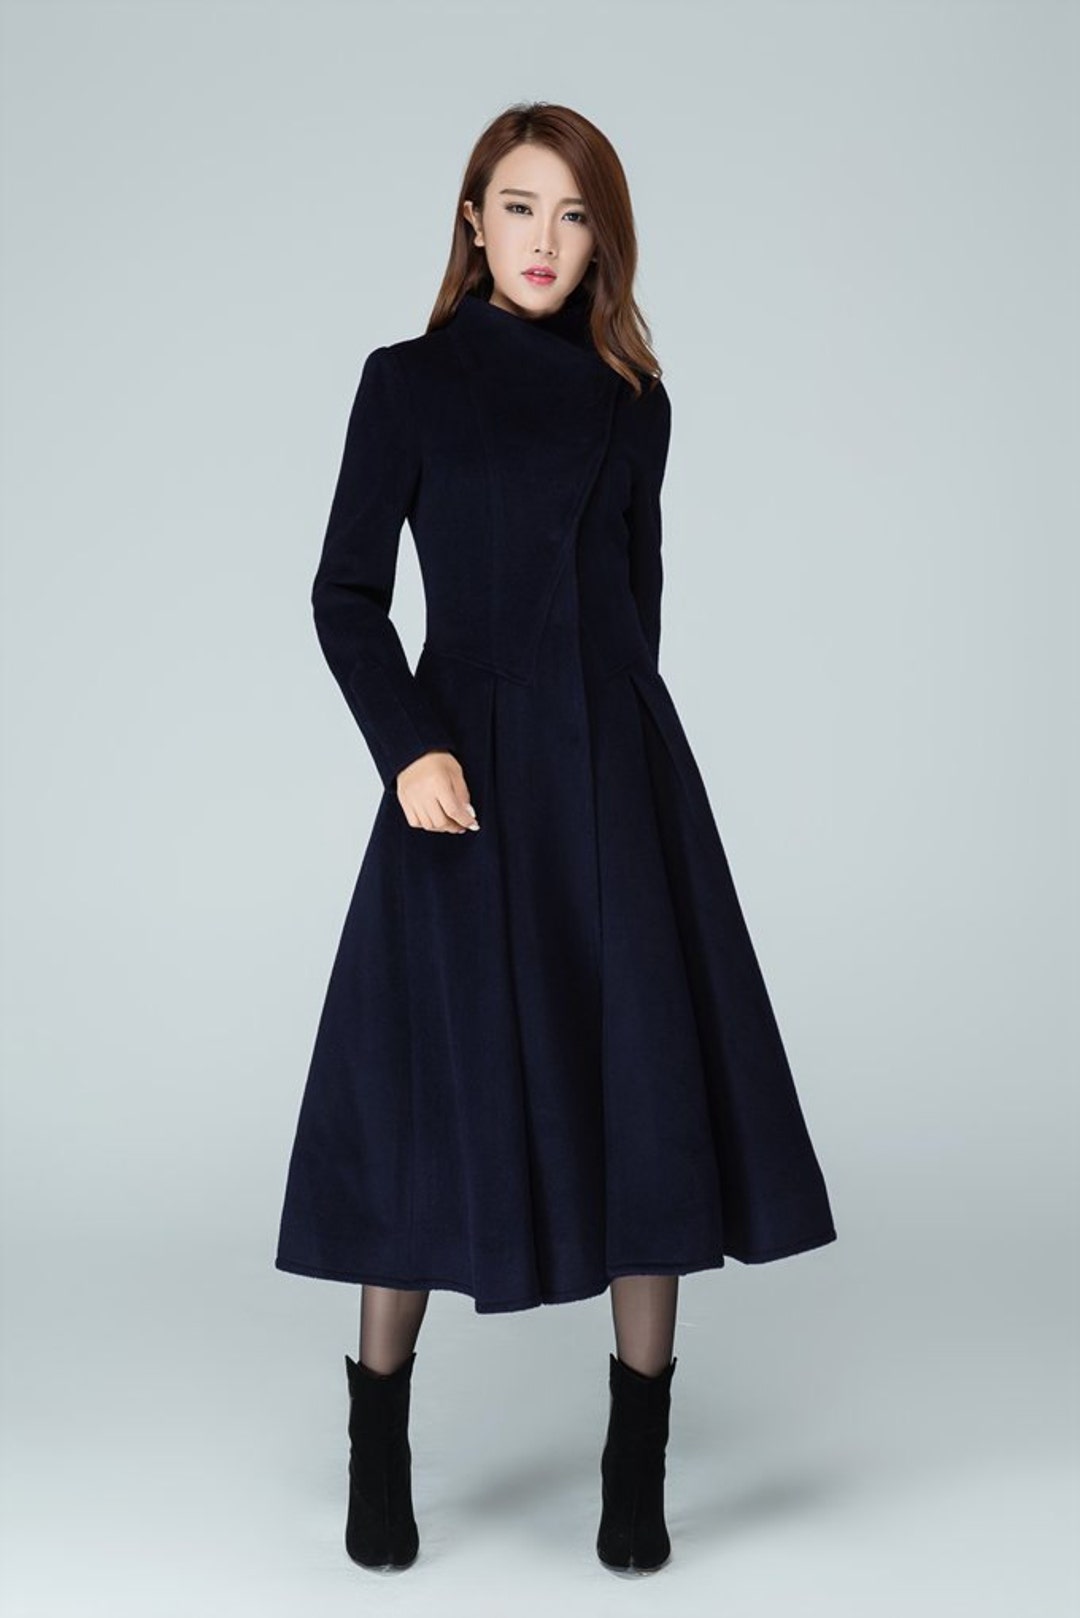 Wool Coat, Gray Wool Coat Women, Winter Coat Women, Asymmetrical Wool Coat,  Womens Coat Vintage, Autumn Winter Outerwear, Ylistyle C257501 